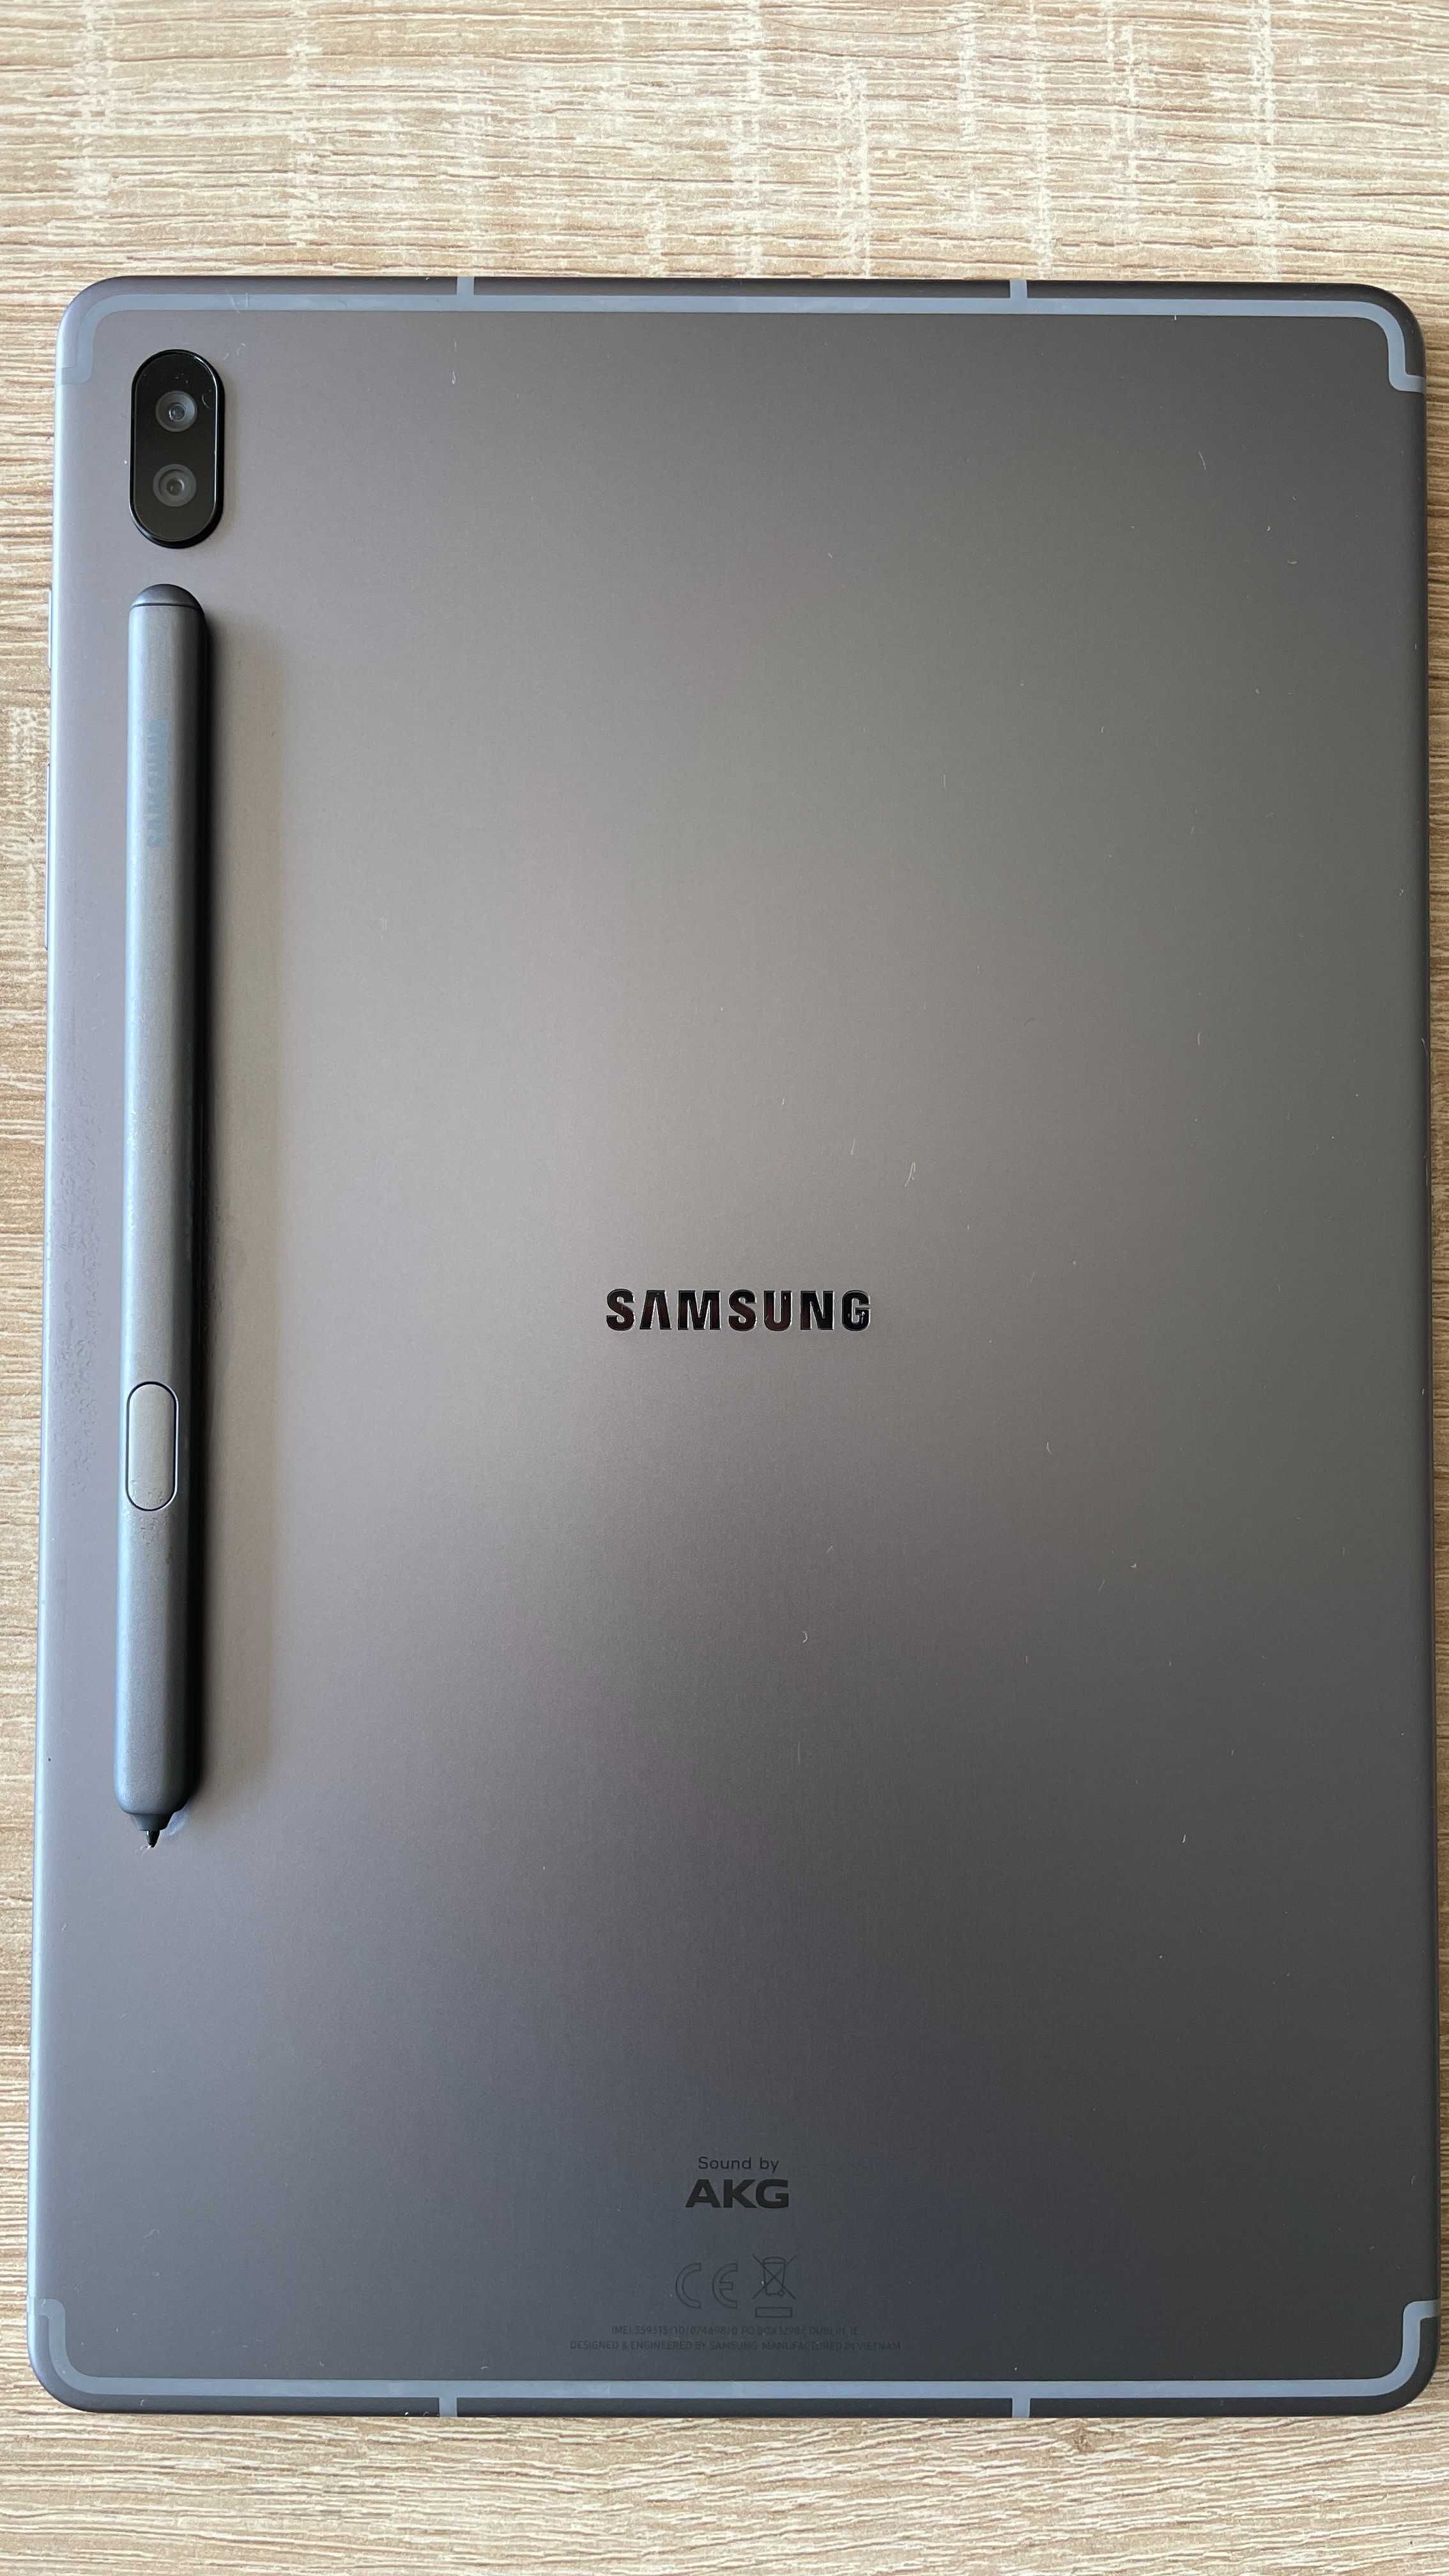 Tablet Samsung S6 256 GB / 8GB RAM/ LTE /Amoled 10,5 2k+ Etui Samsuung